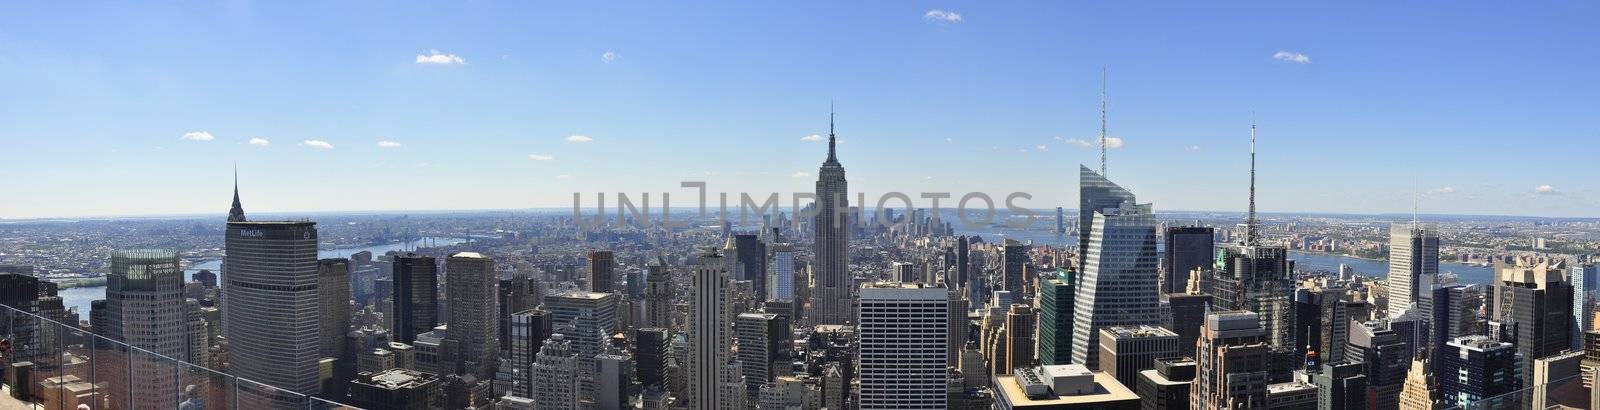 New York City Panorama by ruigsantos